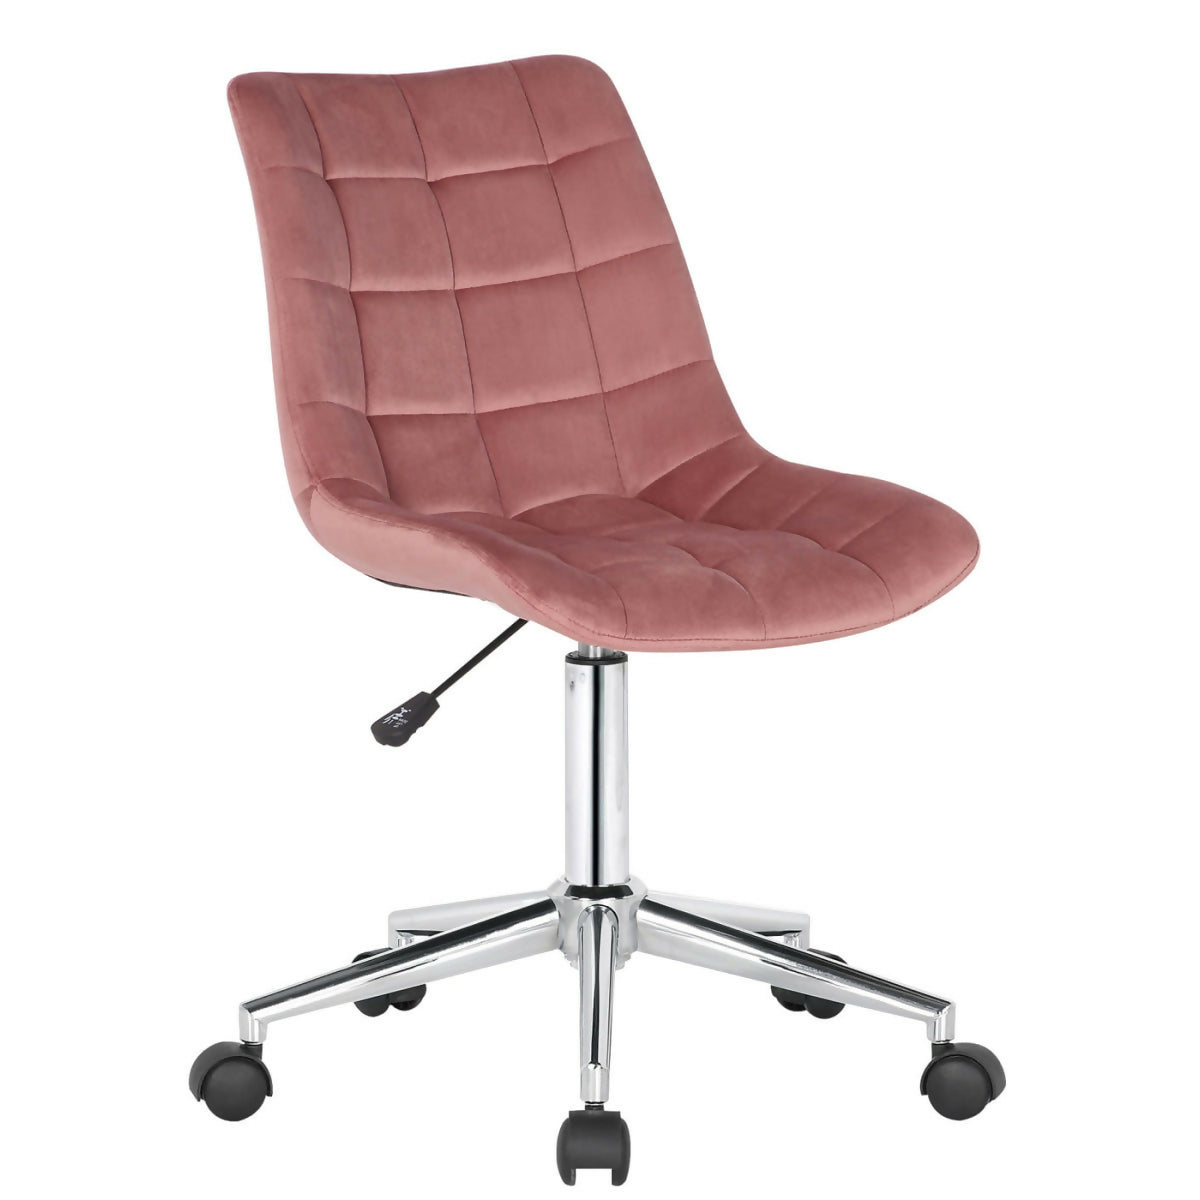 Medford office chair - Pink velvet 